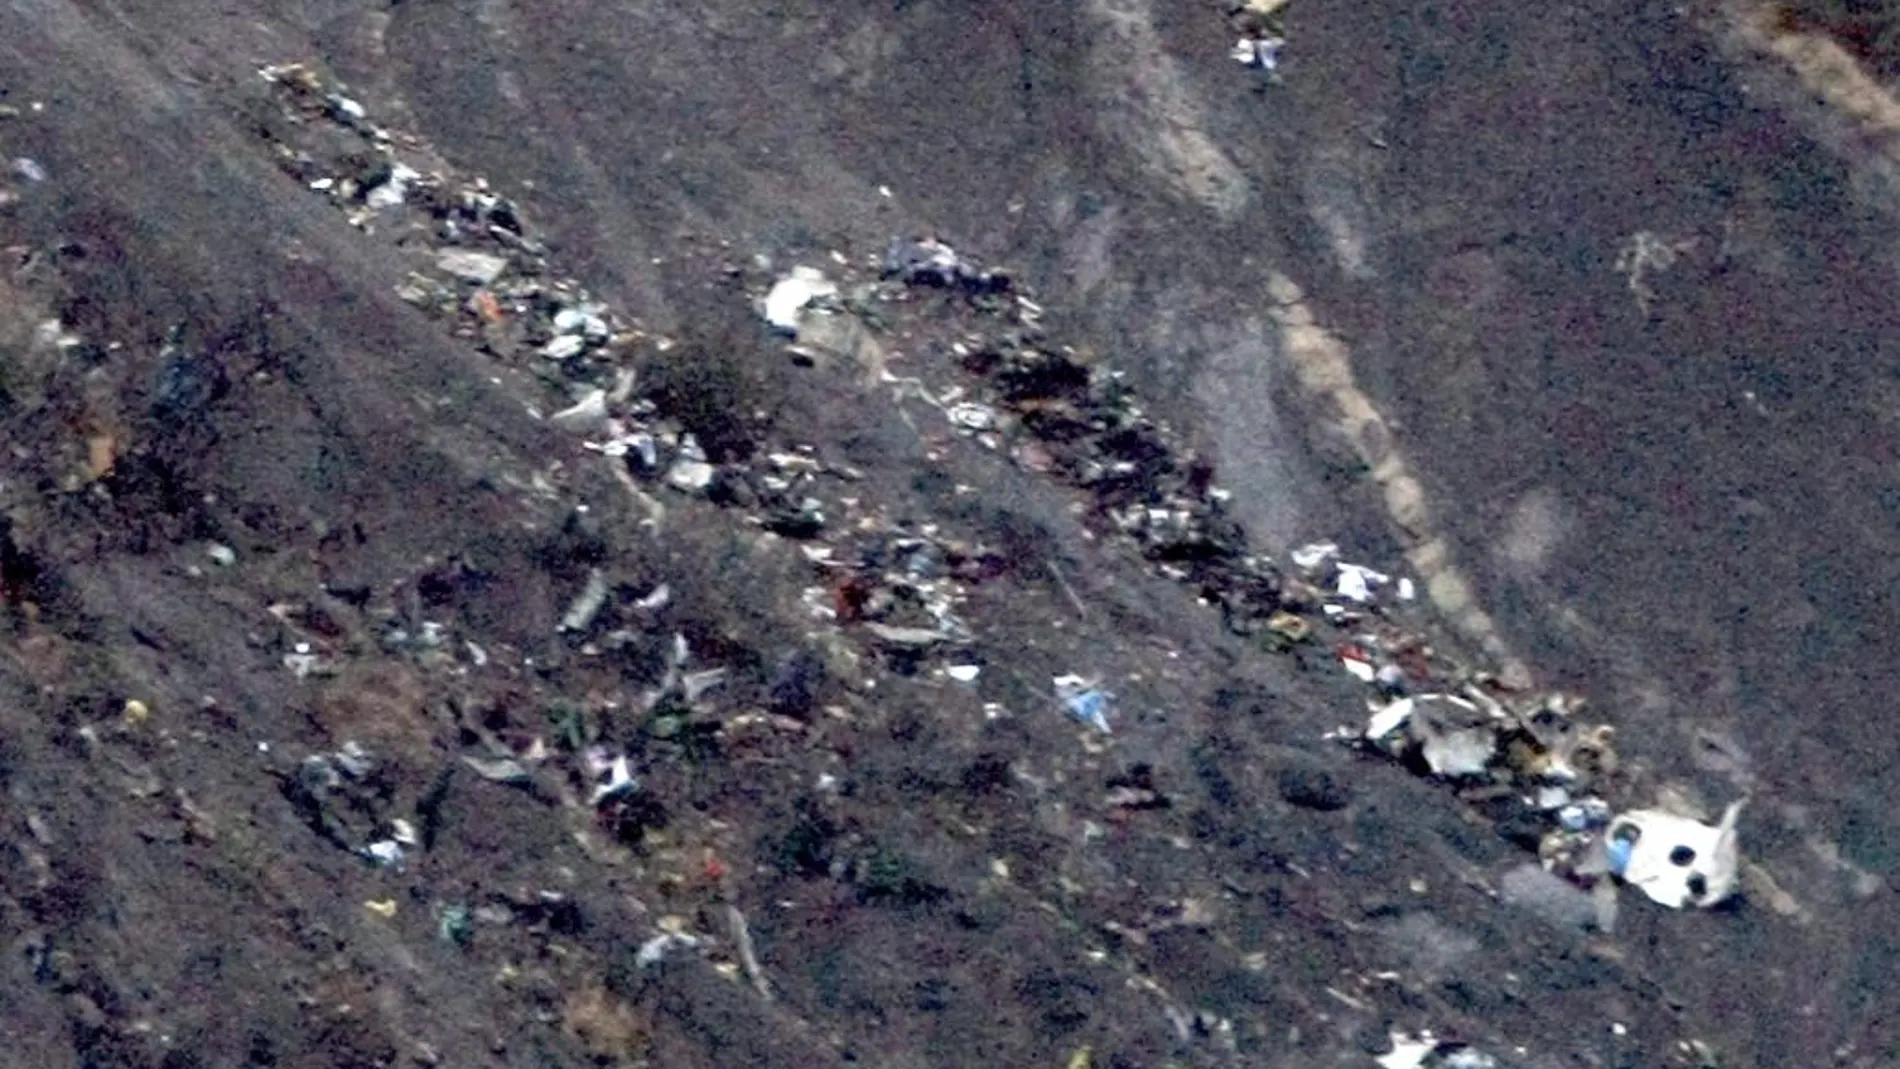 Lugar en el que se estrelló el avión de Germanwings en el que viajaban mayoritariamente pasajeros de nacionalidad alemana y española.